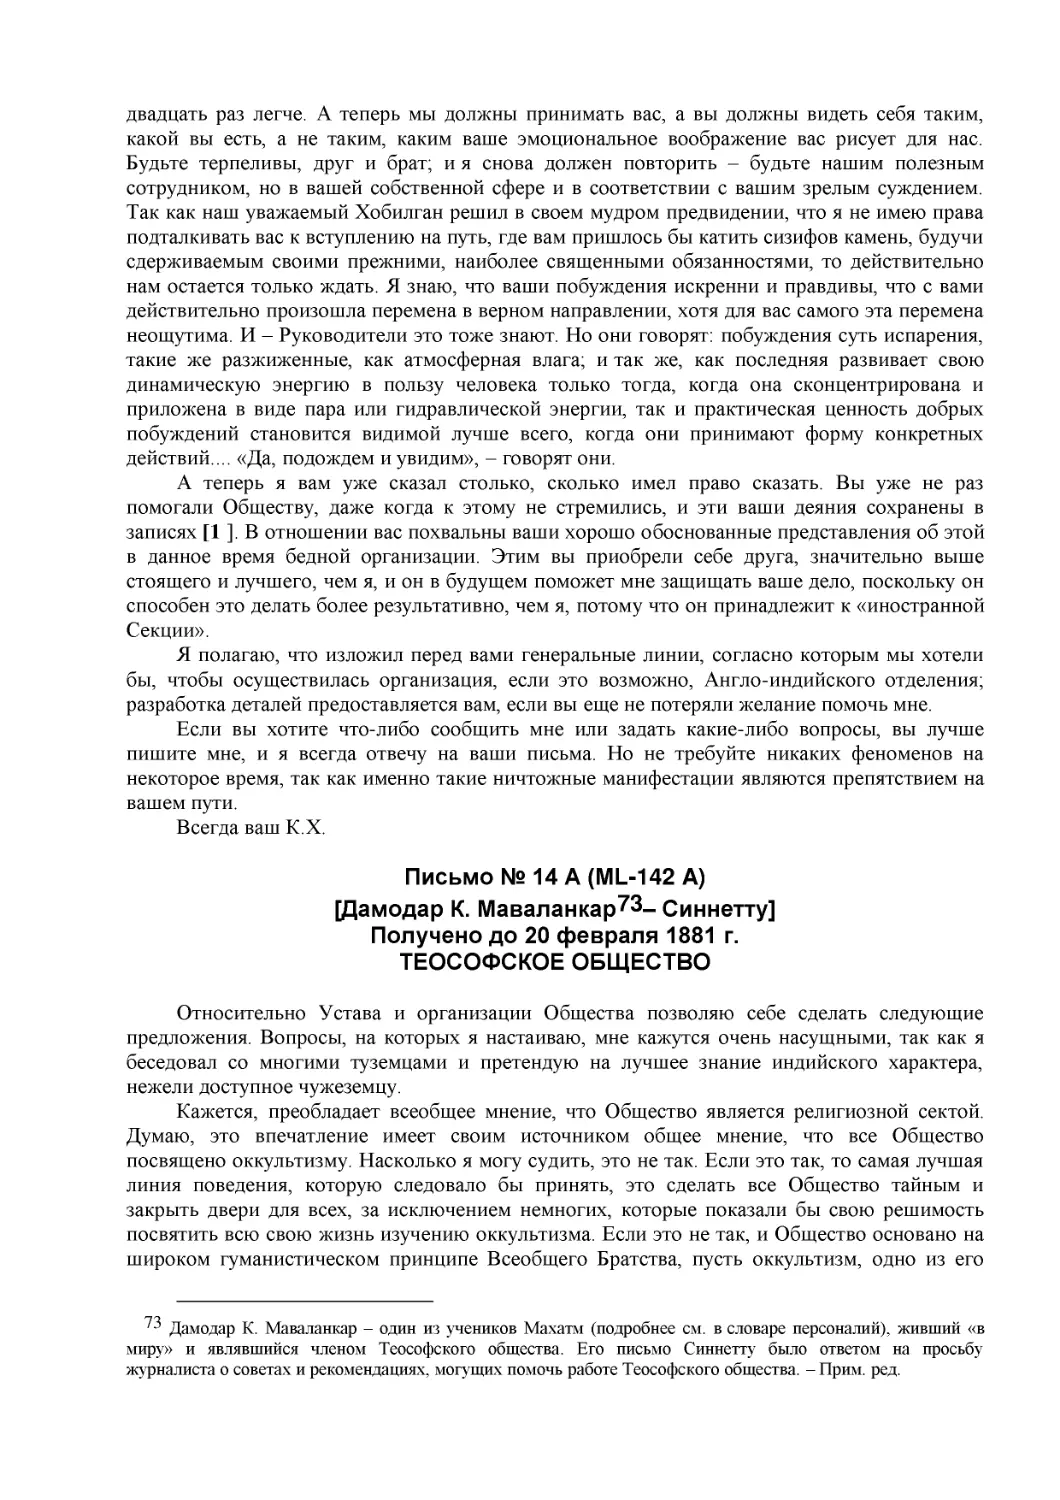 Письмо № 14 A (ML-142 A)
[Дамодар К. Маваланкар – Синнетту]
Получено до 20 февраля 1881 г.
ТЕОСОФСКОЕ ОБЩЕСТВО